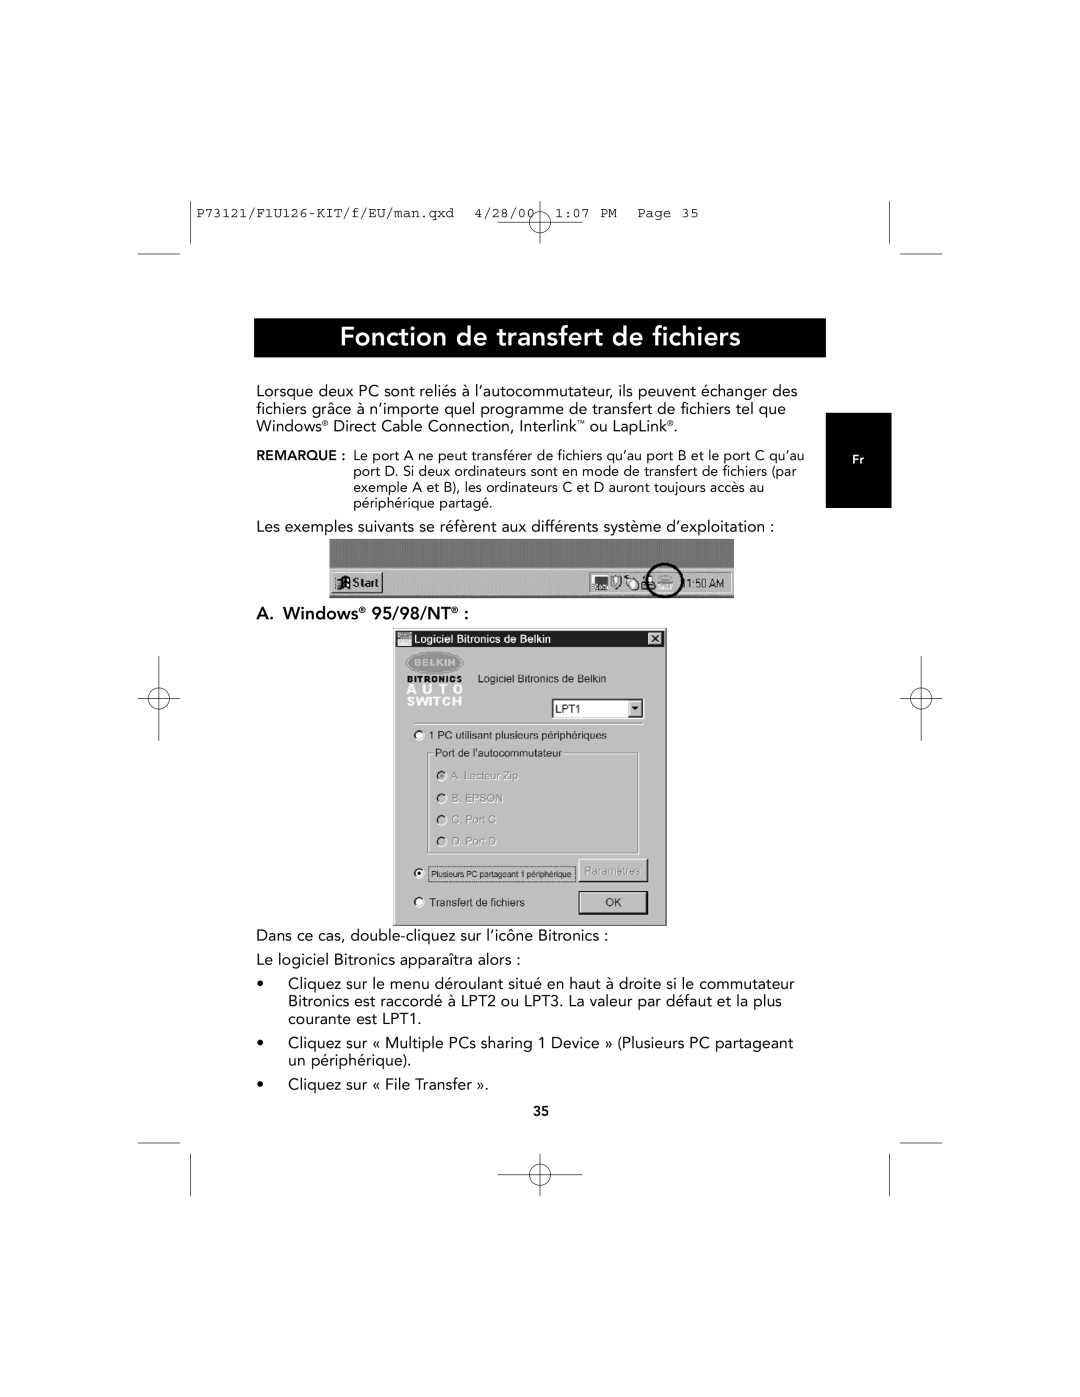 Belkin F1U126-KIT, P73121 user manual Fonction de transfert de fichiers, A. Windows 95/98/NT 